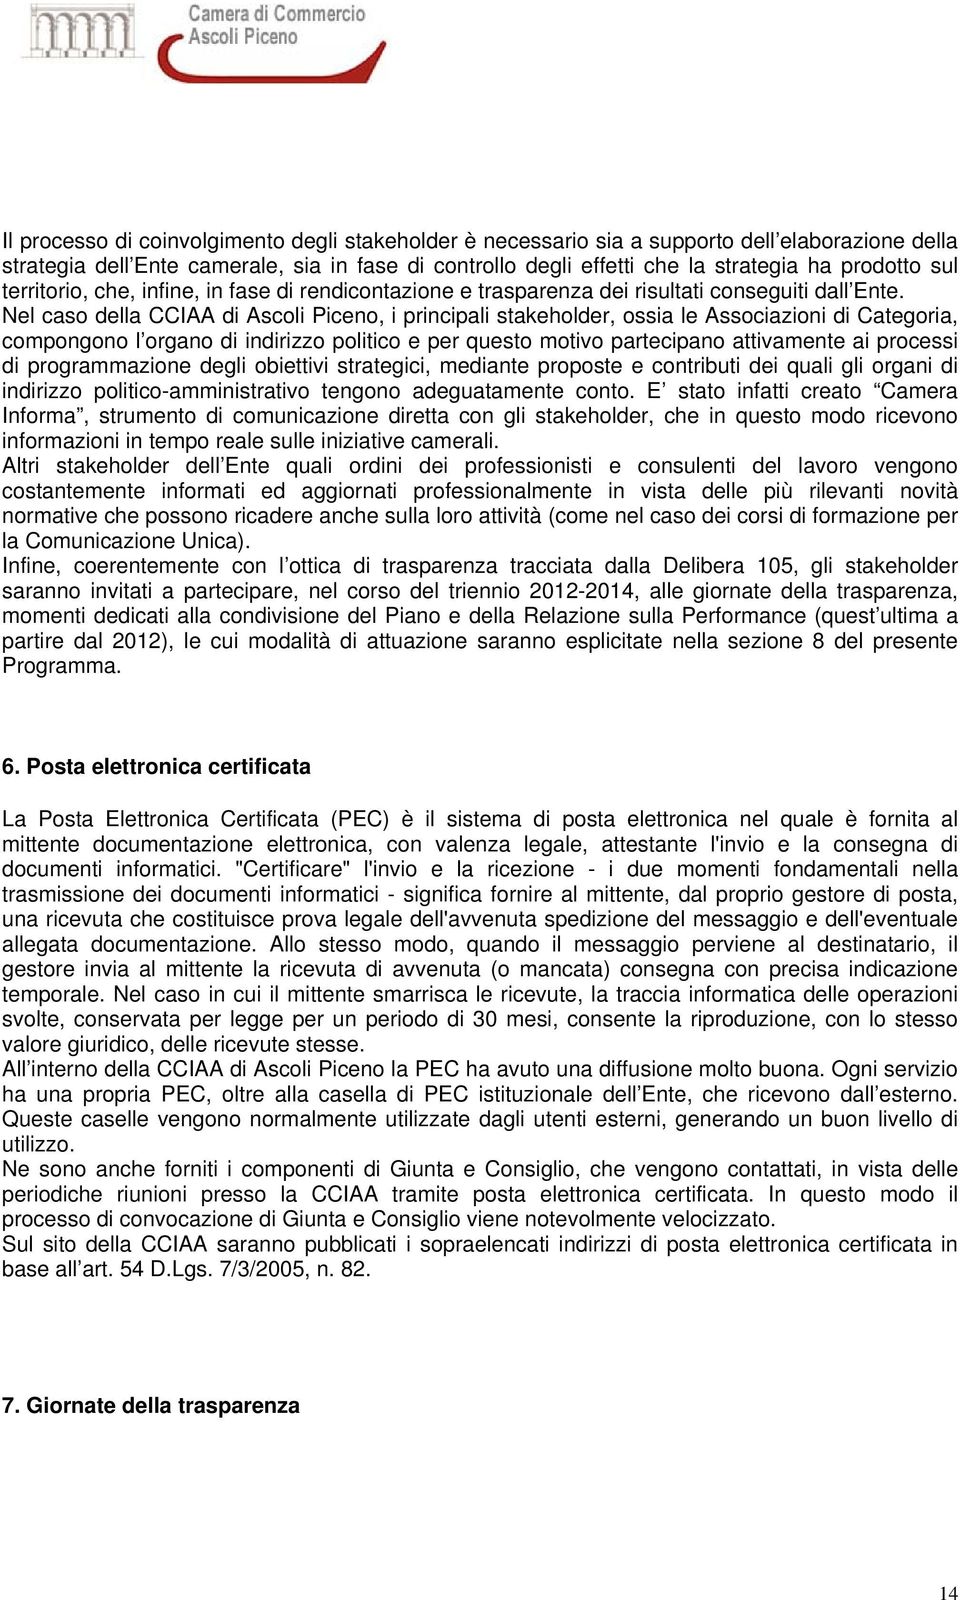 Nel cso dell CCIAA di Ascoli Piceno, i principli stkeholder, ossi le Associzioni di Ctegori, compongono l orgno di indirizzo politico e per questo motivo prtecipno ttivmente i processi di